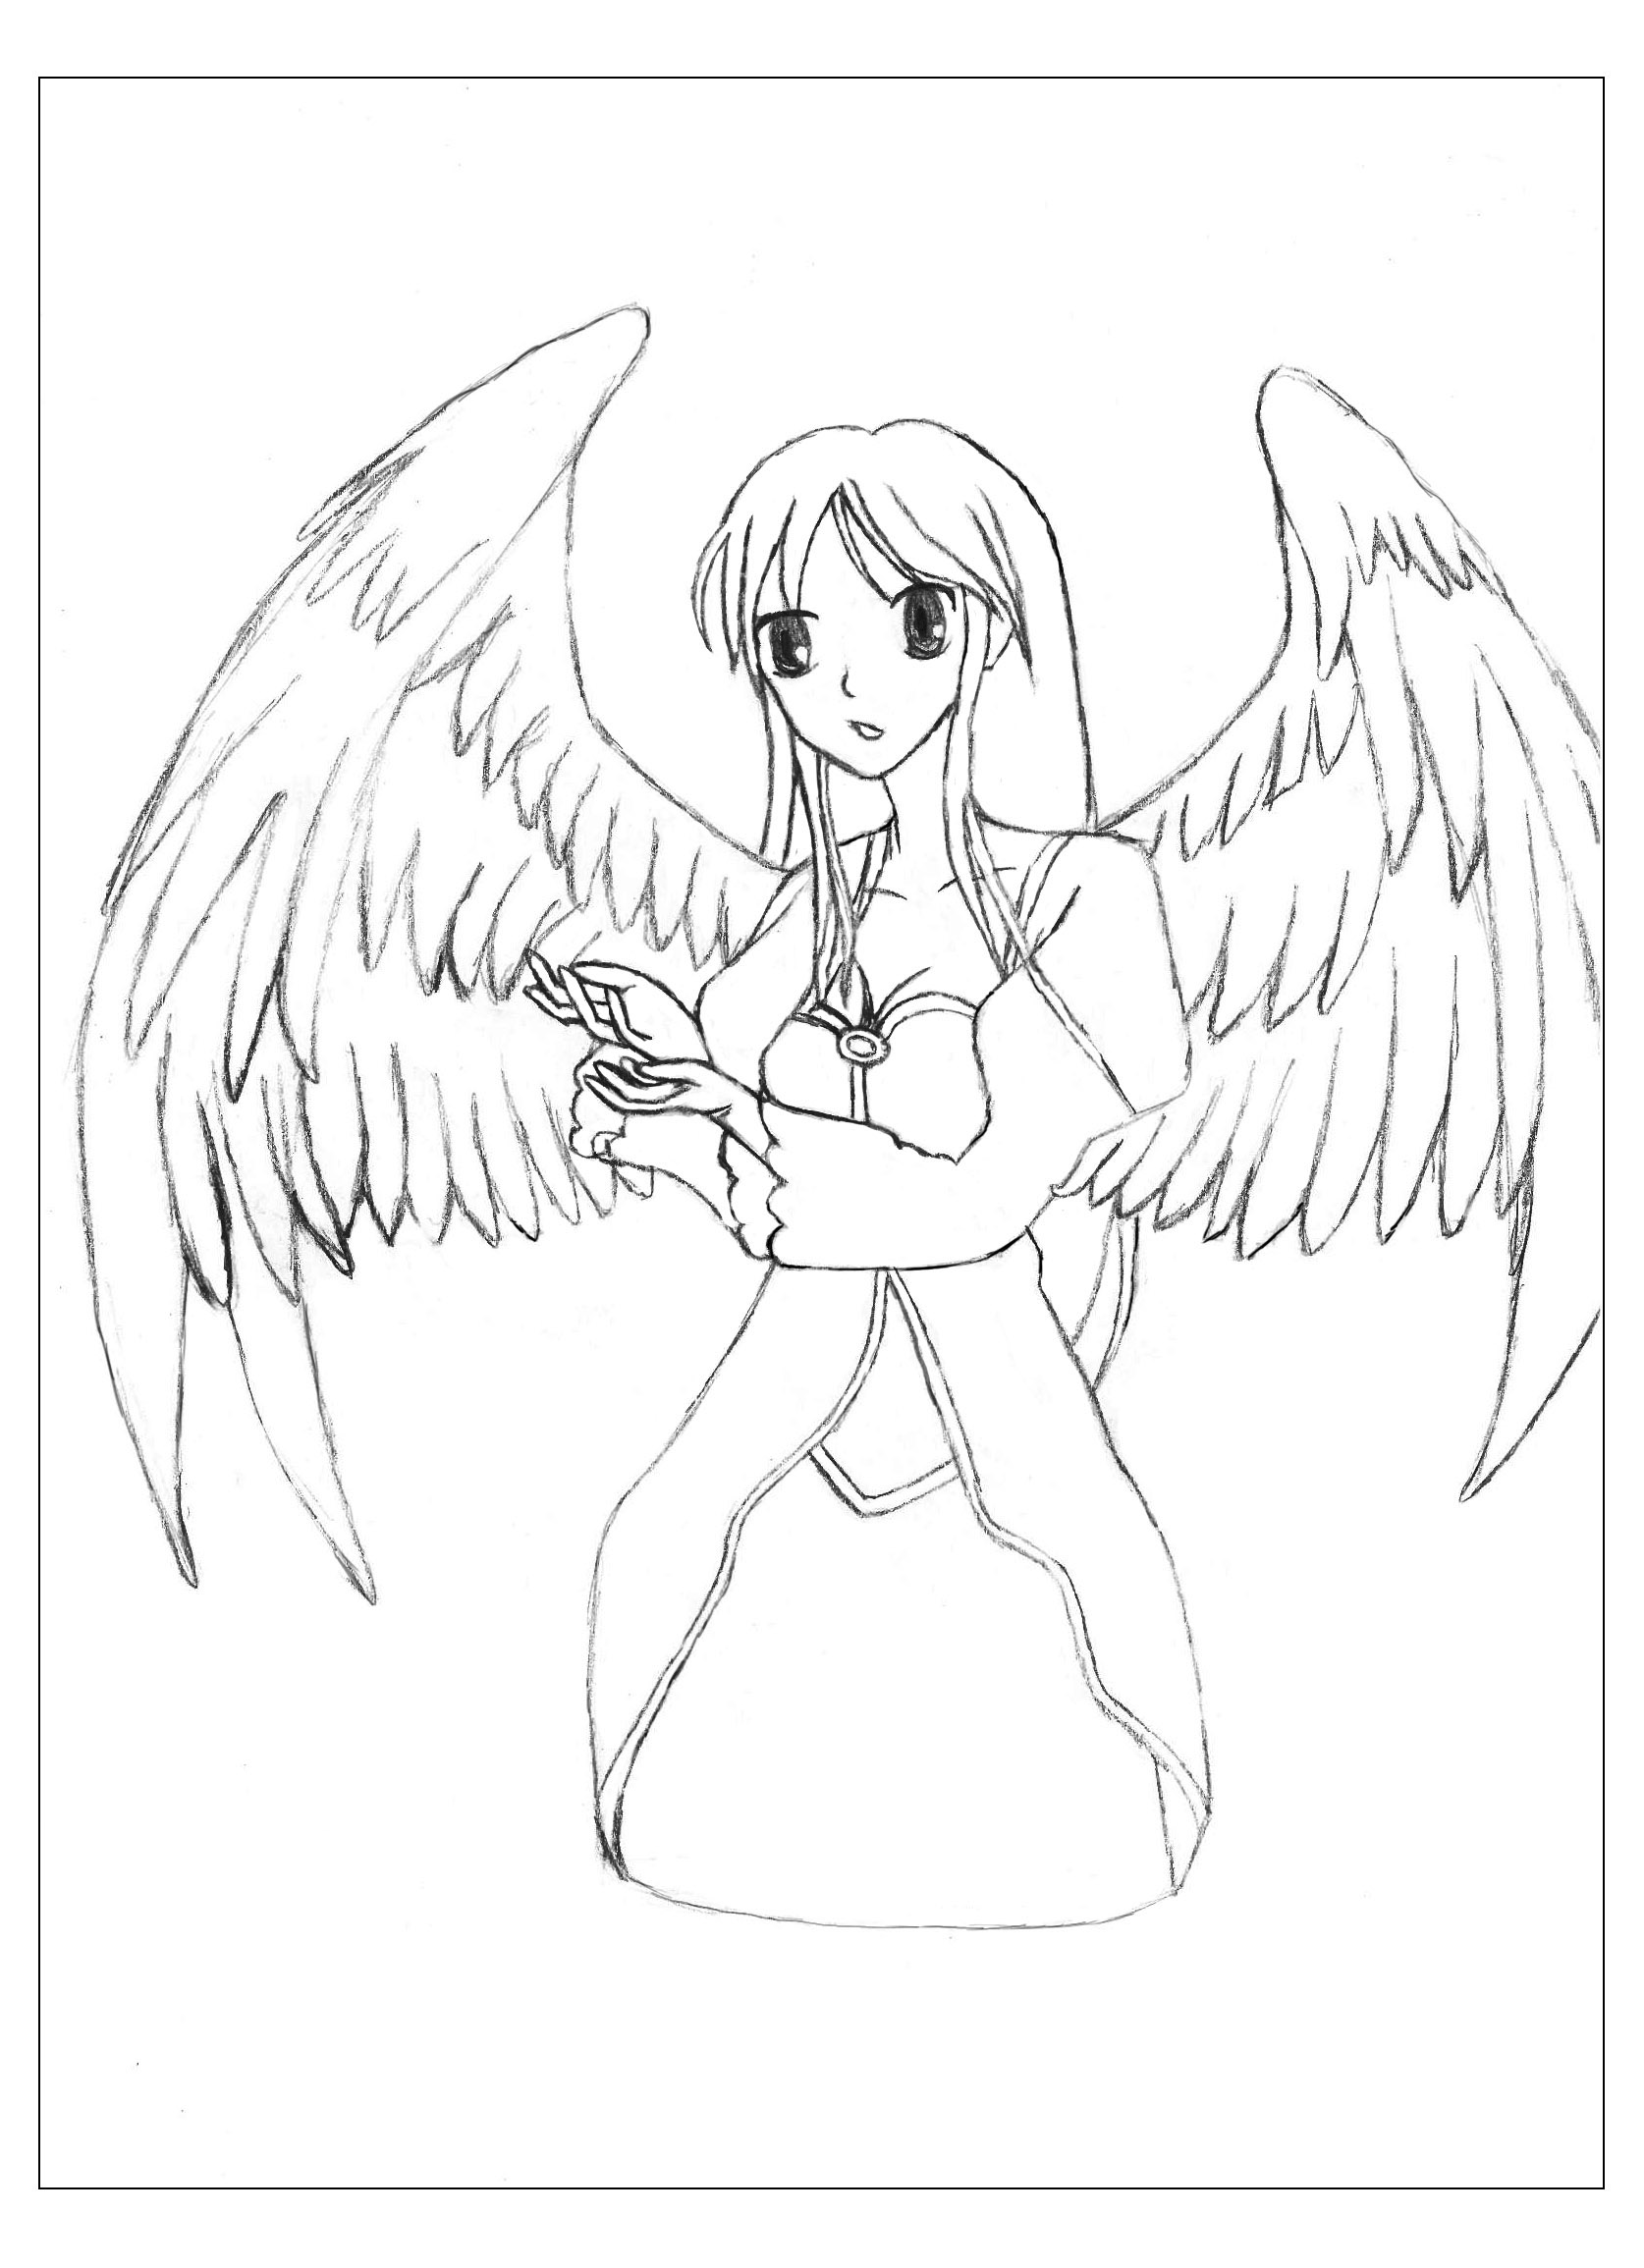 Un disegno originale in stile Manga di un angelo con magnifiche ali